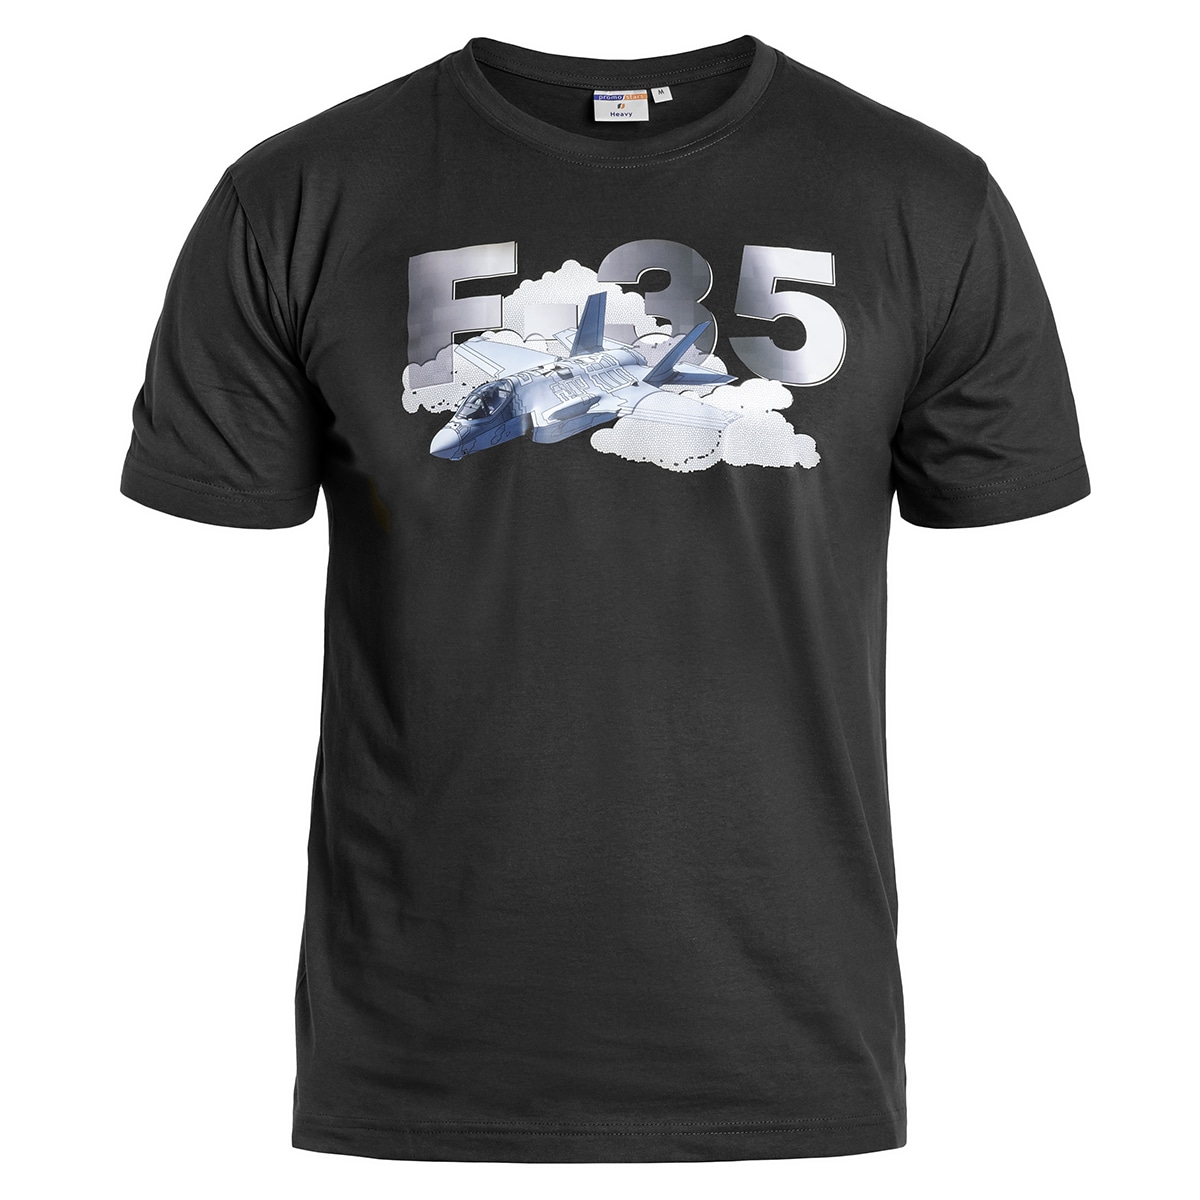 Футболка T-shirt F-35 - Black